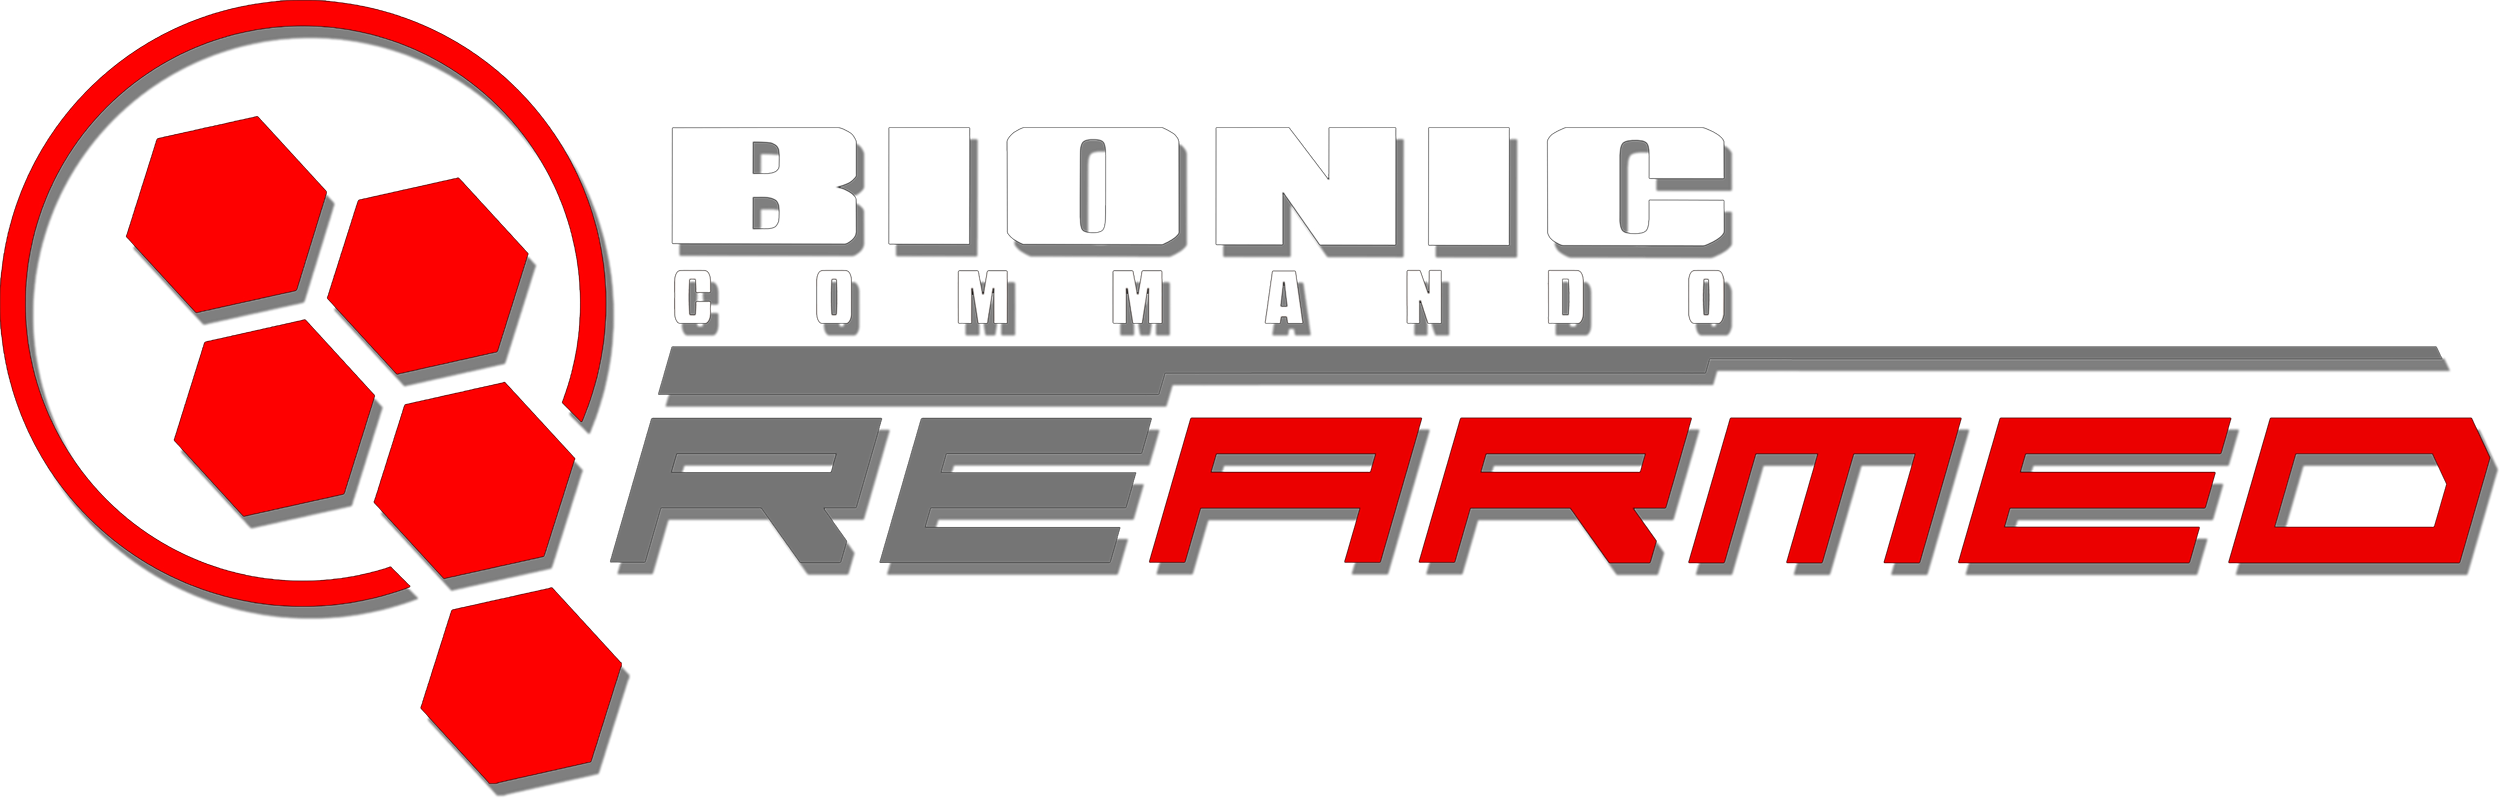 bionic commando rearmed download